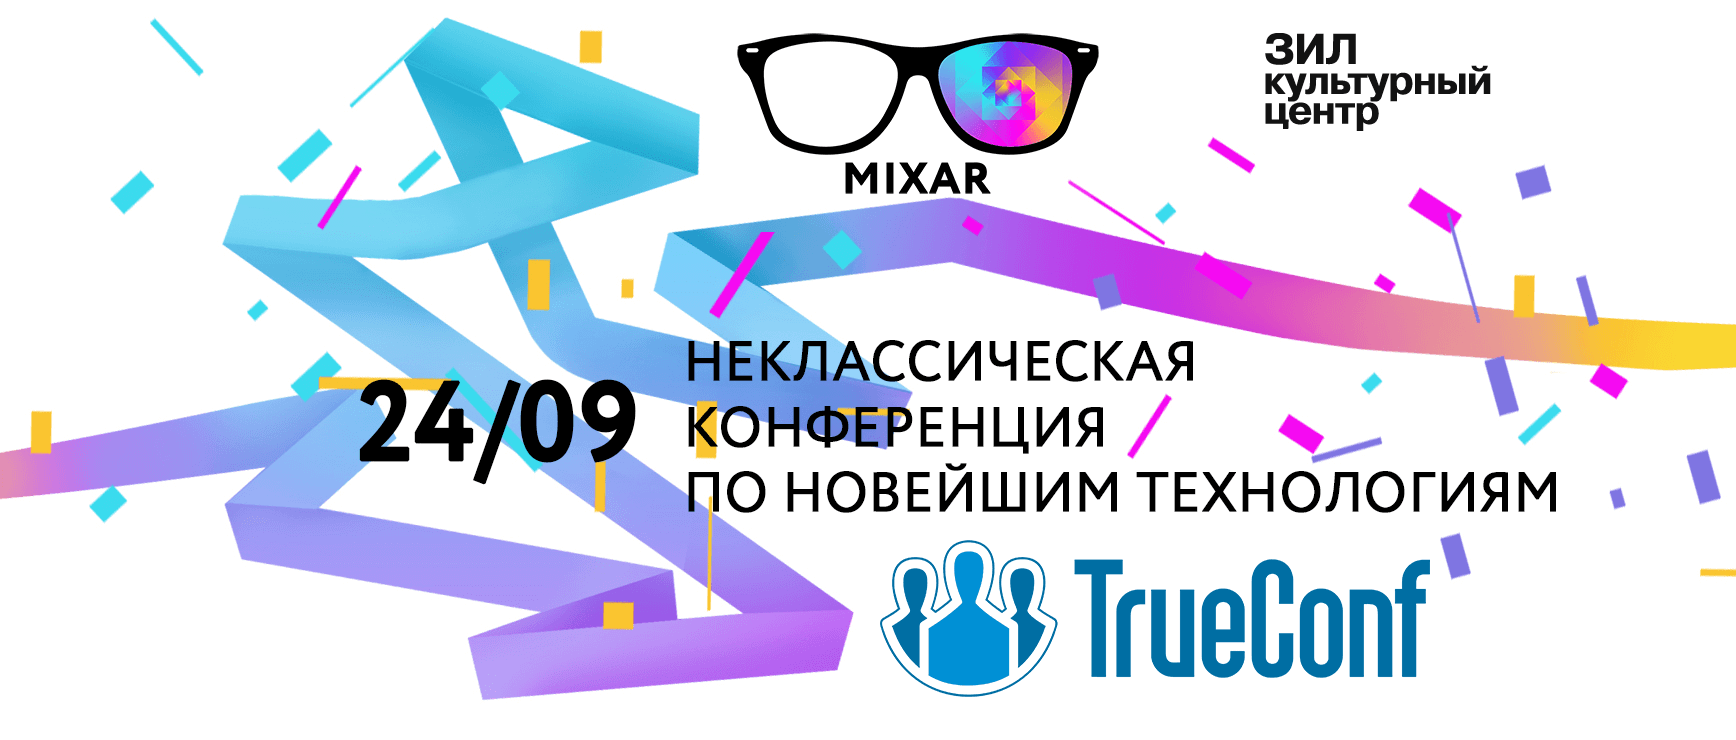 3D-видеосвязь TrueConf на неклассической конференции MIXAR2016 1